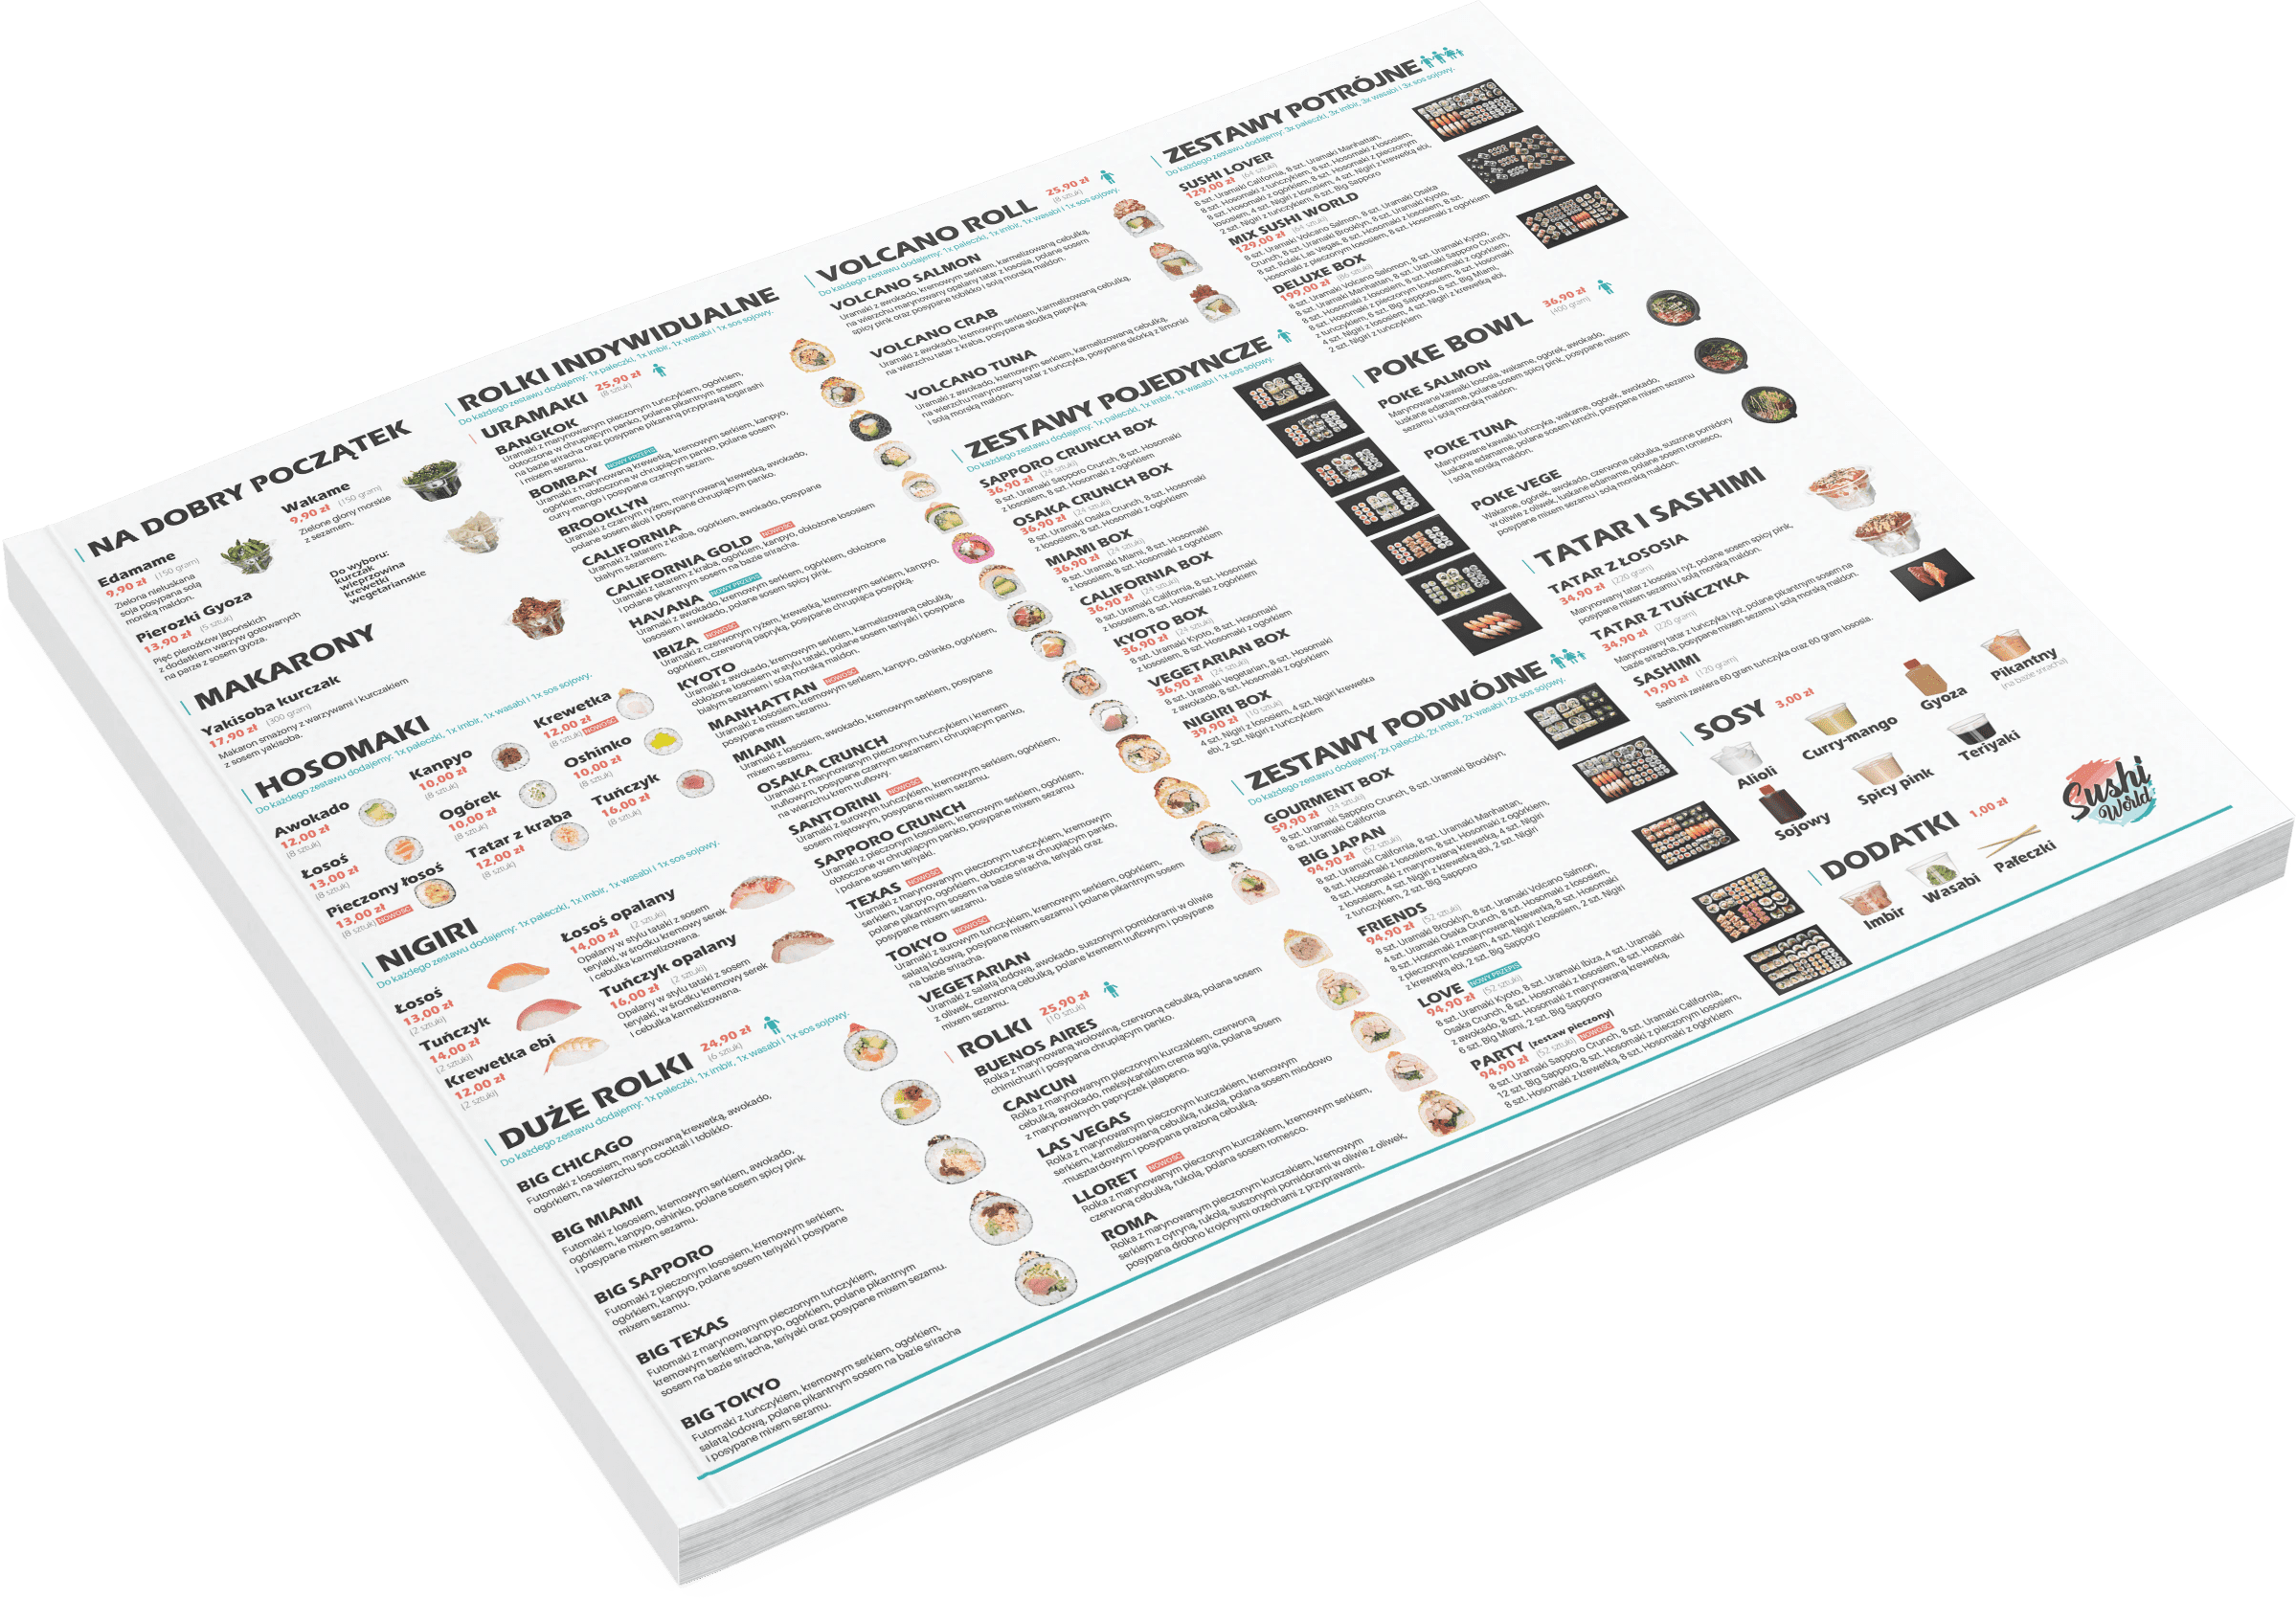 Rebranding Sushi World identyfikacja wizualna 11 min